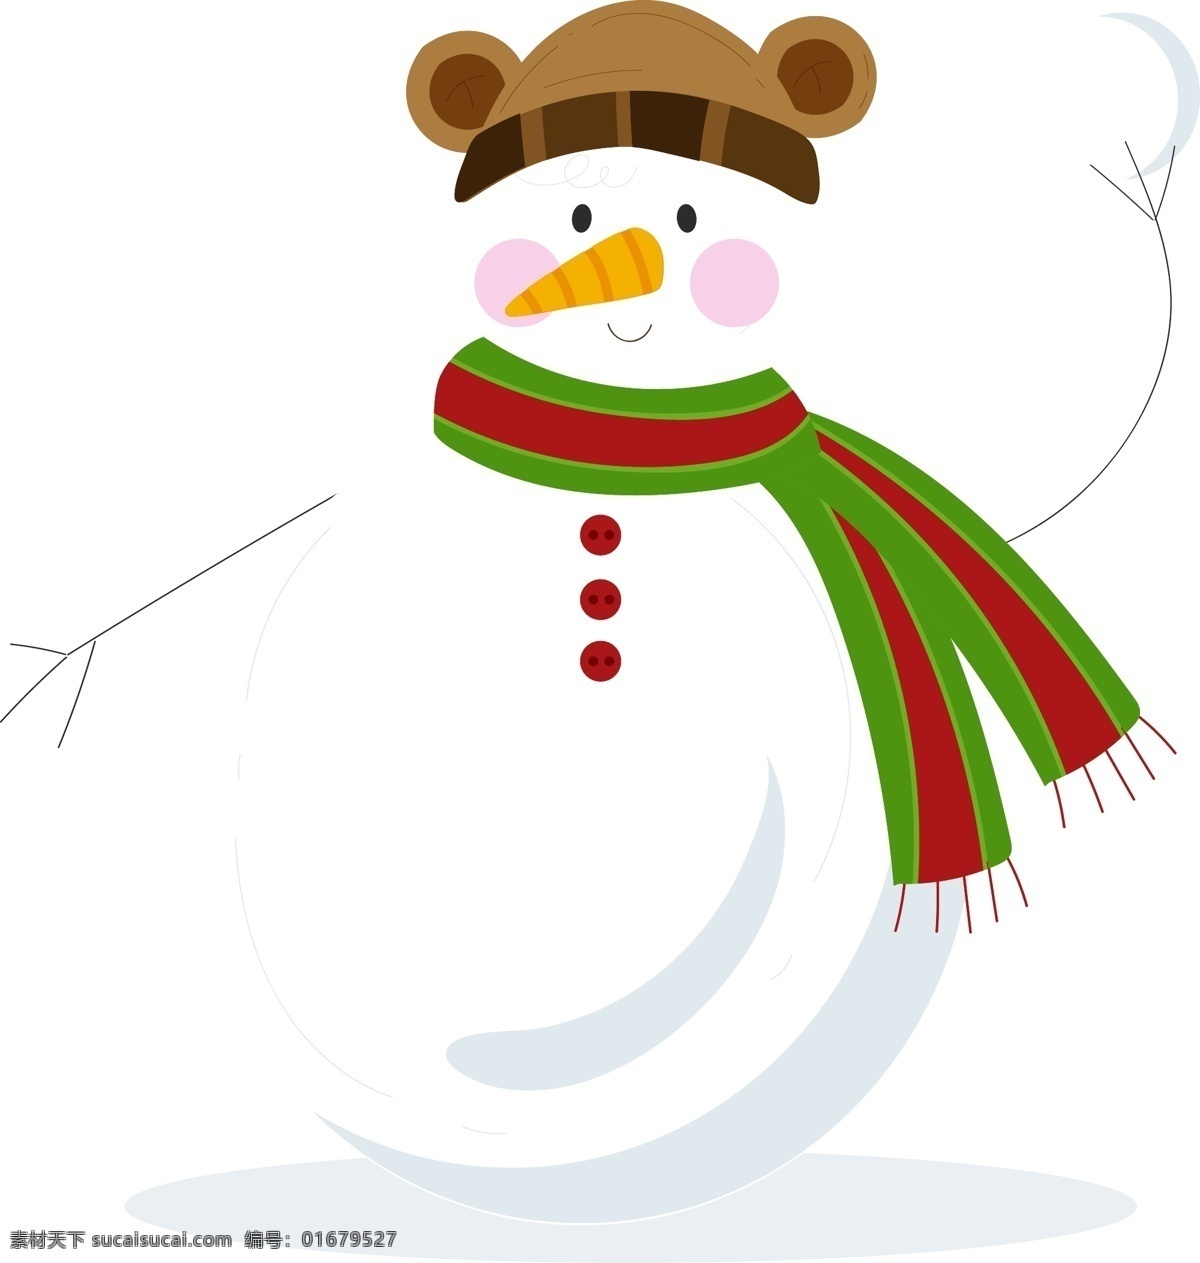 雪球 雪人 原创 元素 可爱 寒冷 冬天 原创元素 小熊帽子 大肚子雪人 白色雪人 打雪仗